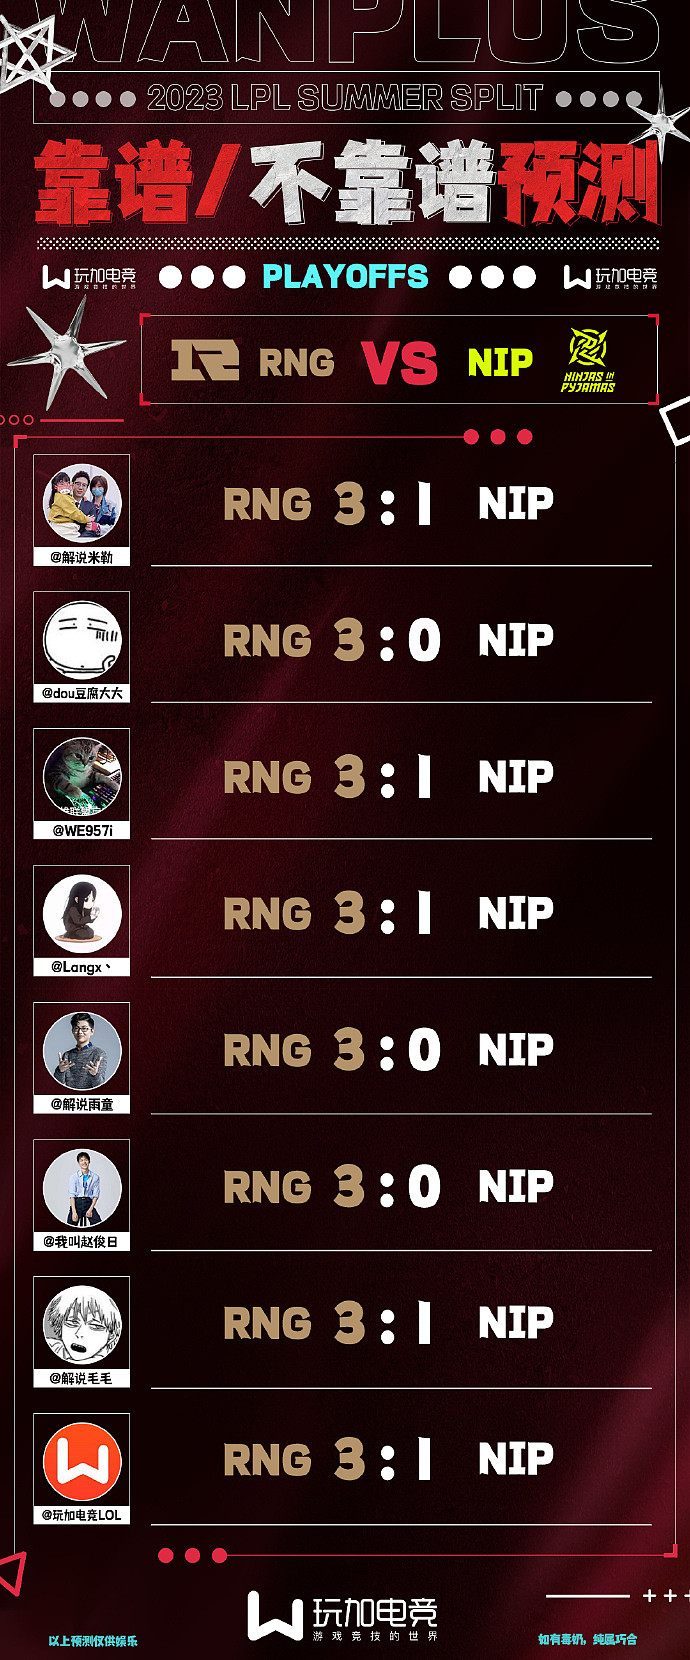 解说预测RNGvsNIP：米勒、雨童等七人全部看好RNG胜出 - 1